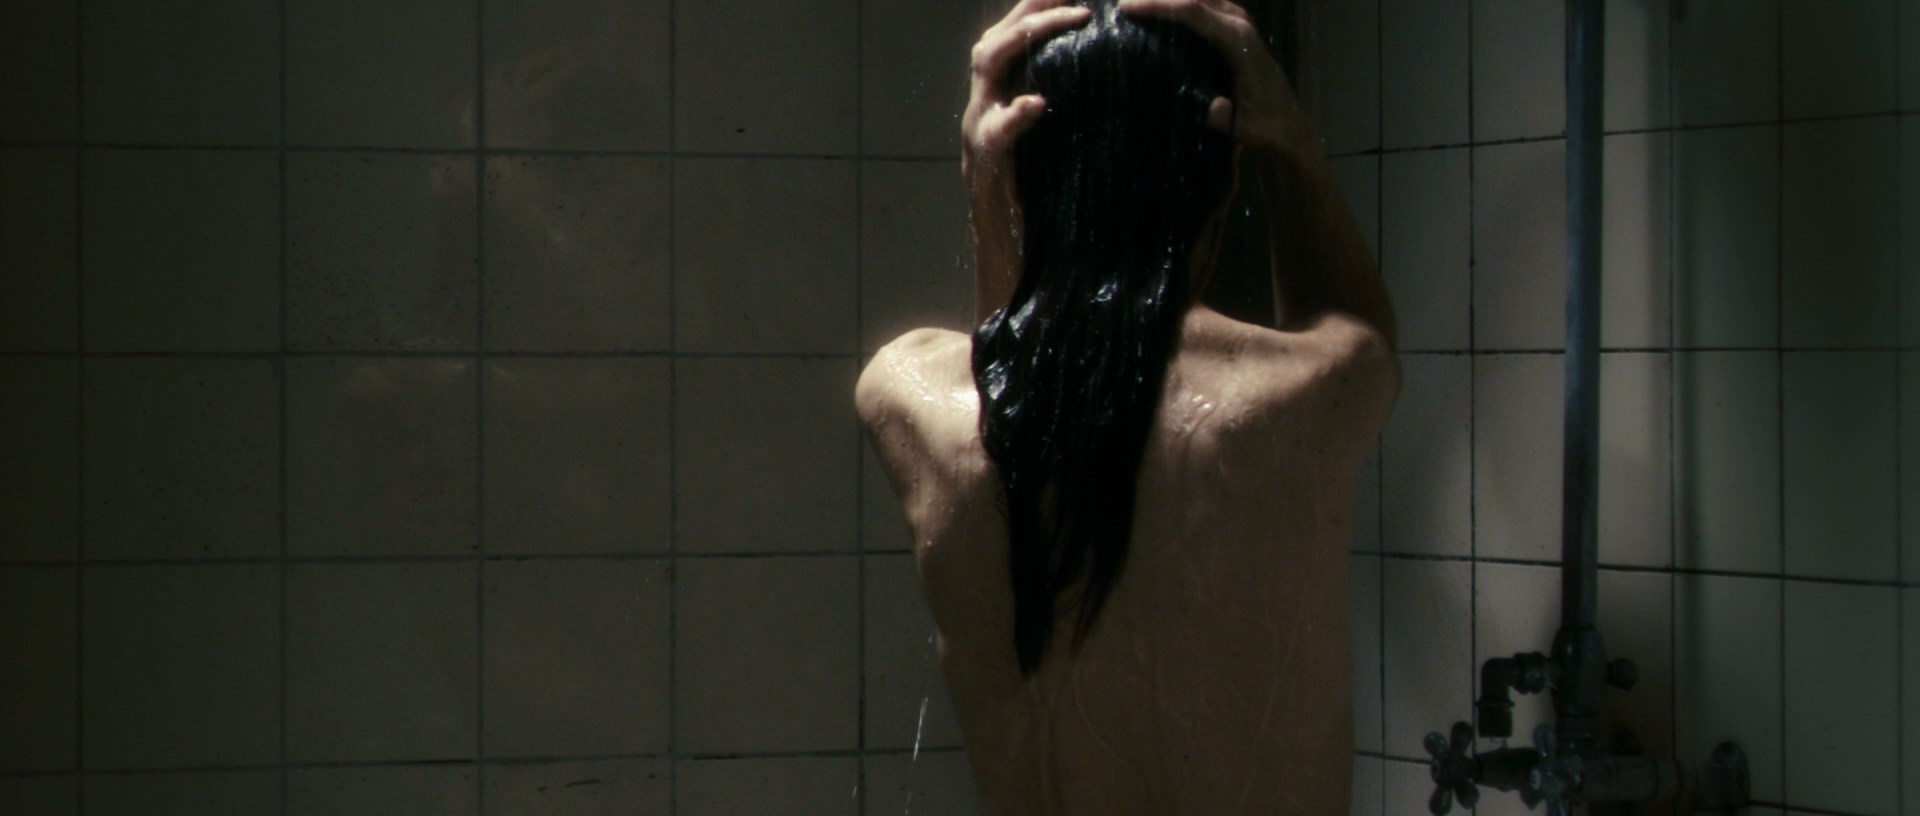 Charlotte Gainsbourg - Antichrist - 1080p.